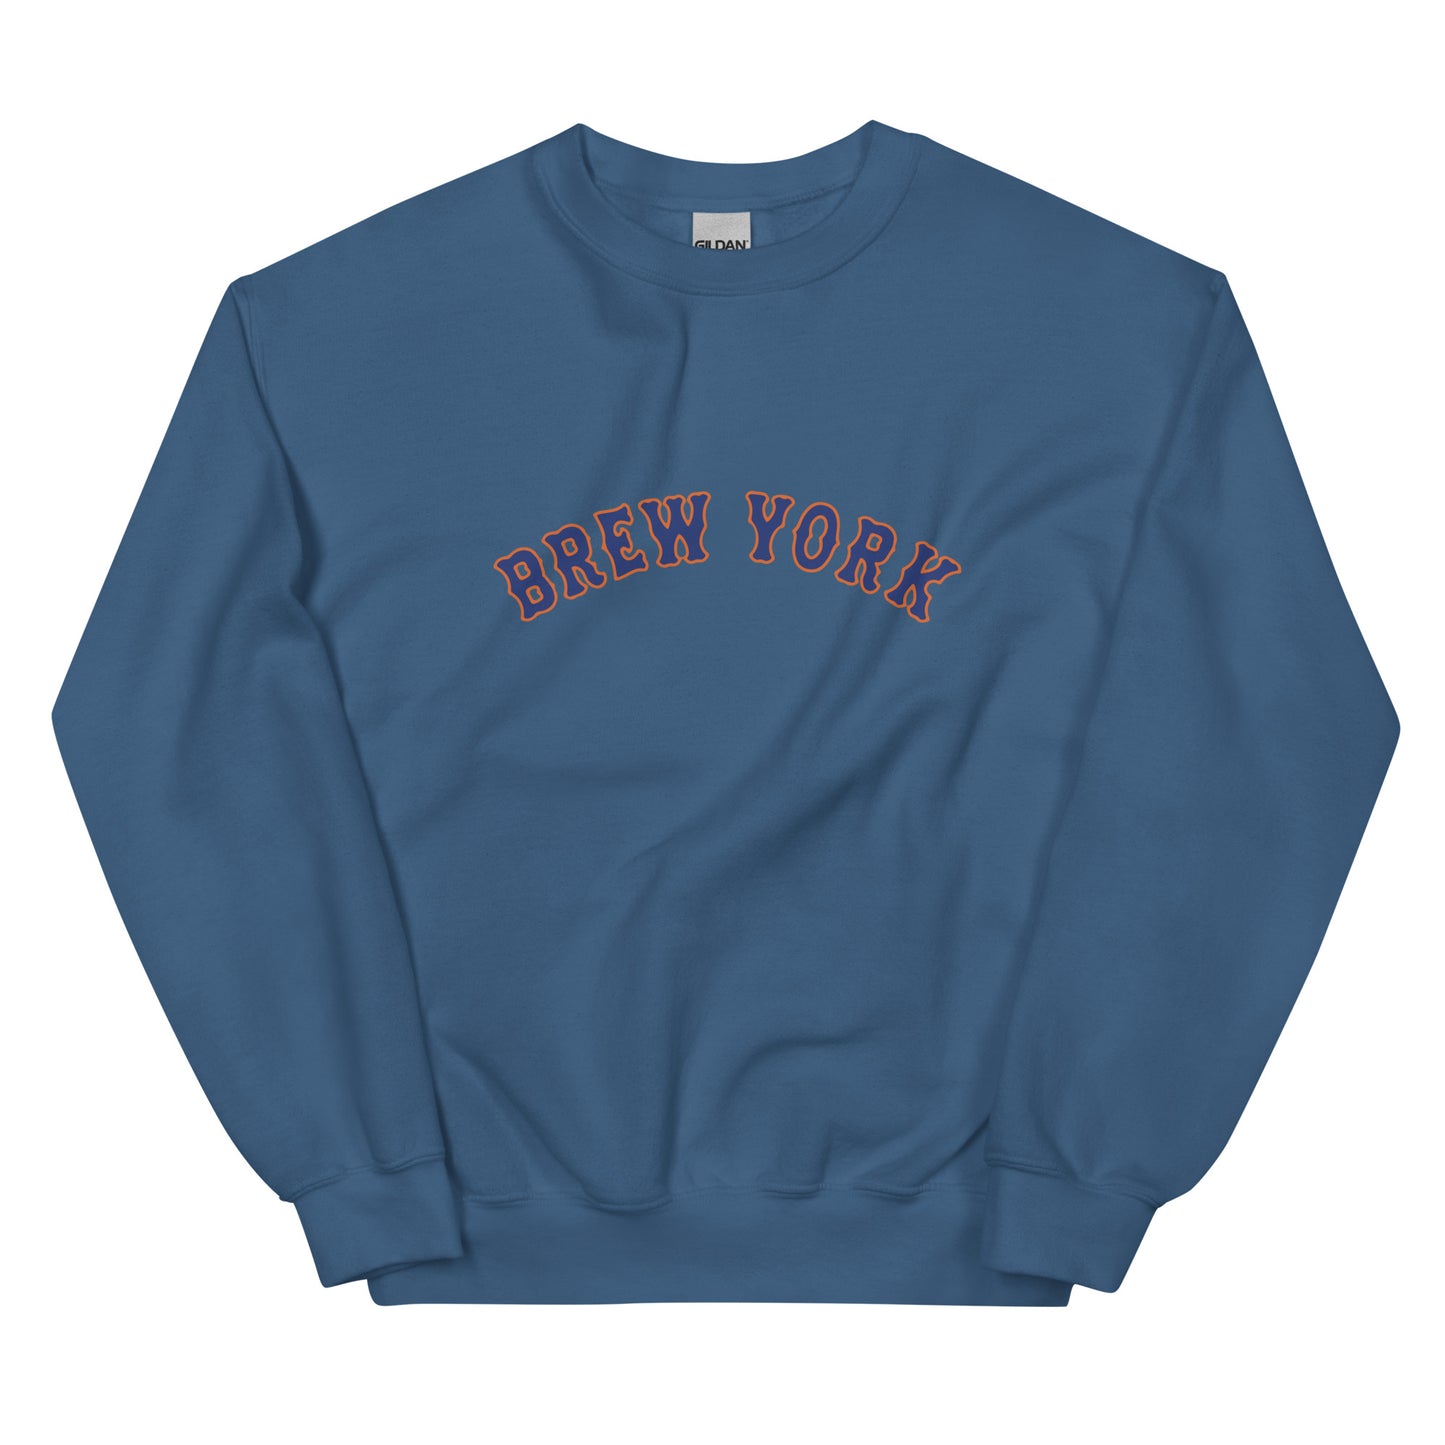 Brew York Queens Sweatshirt